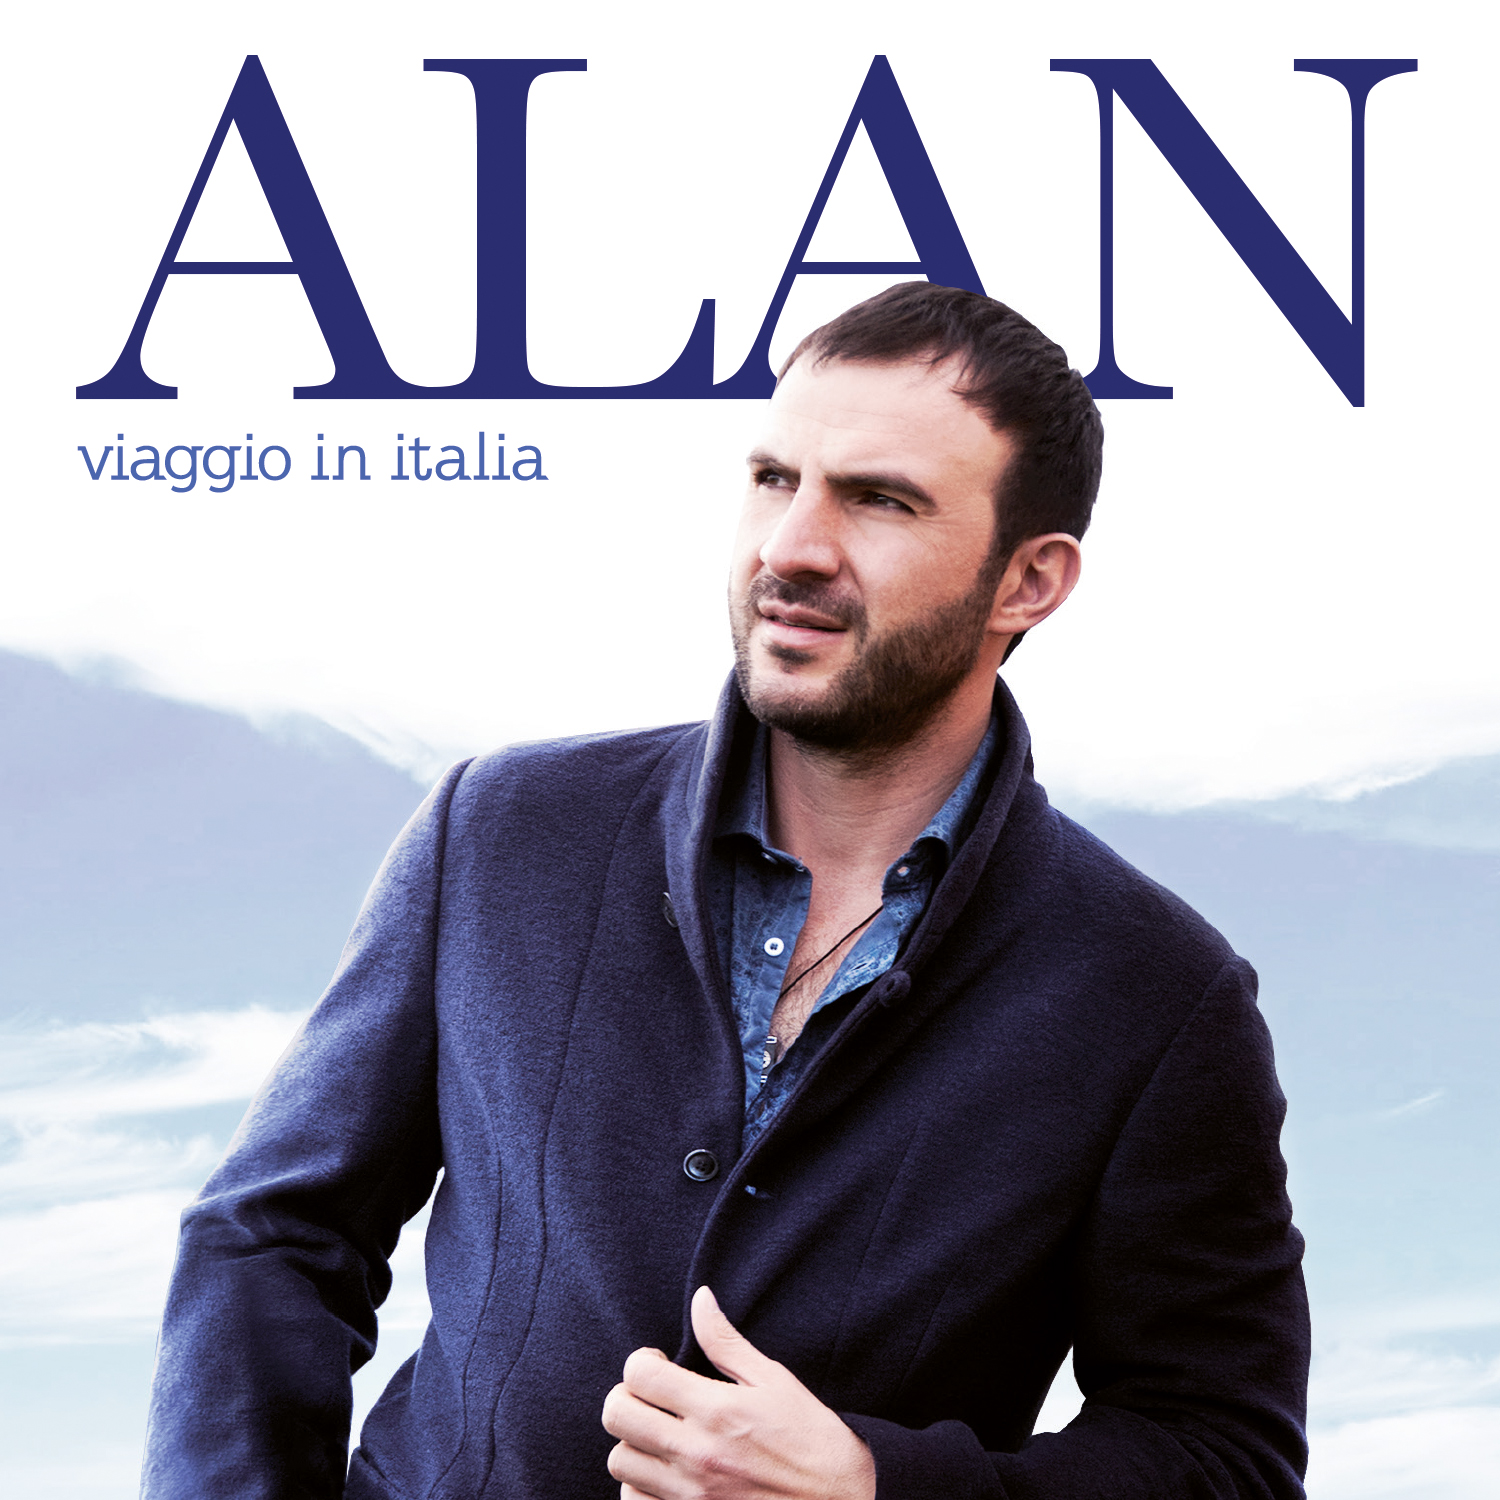 Alan - Viaggio in Italia